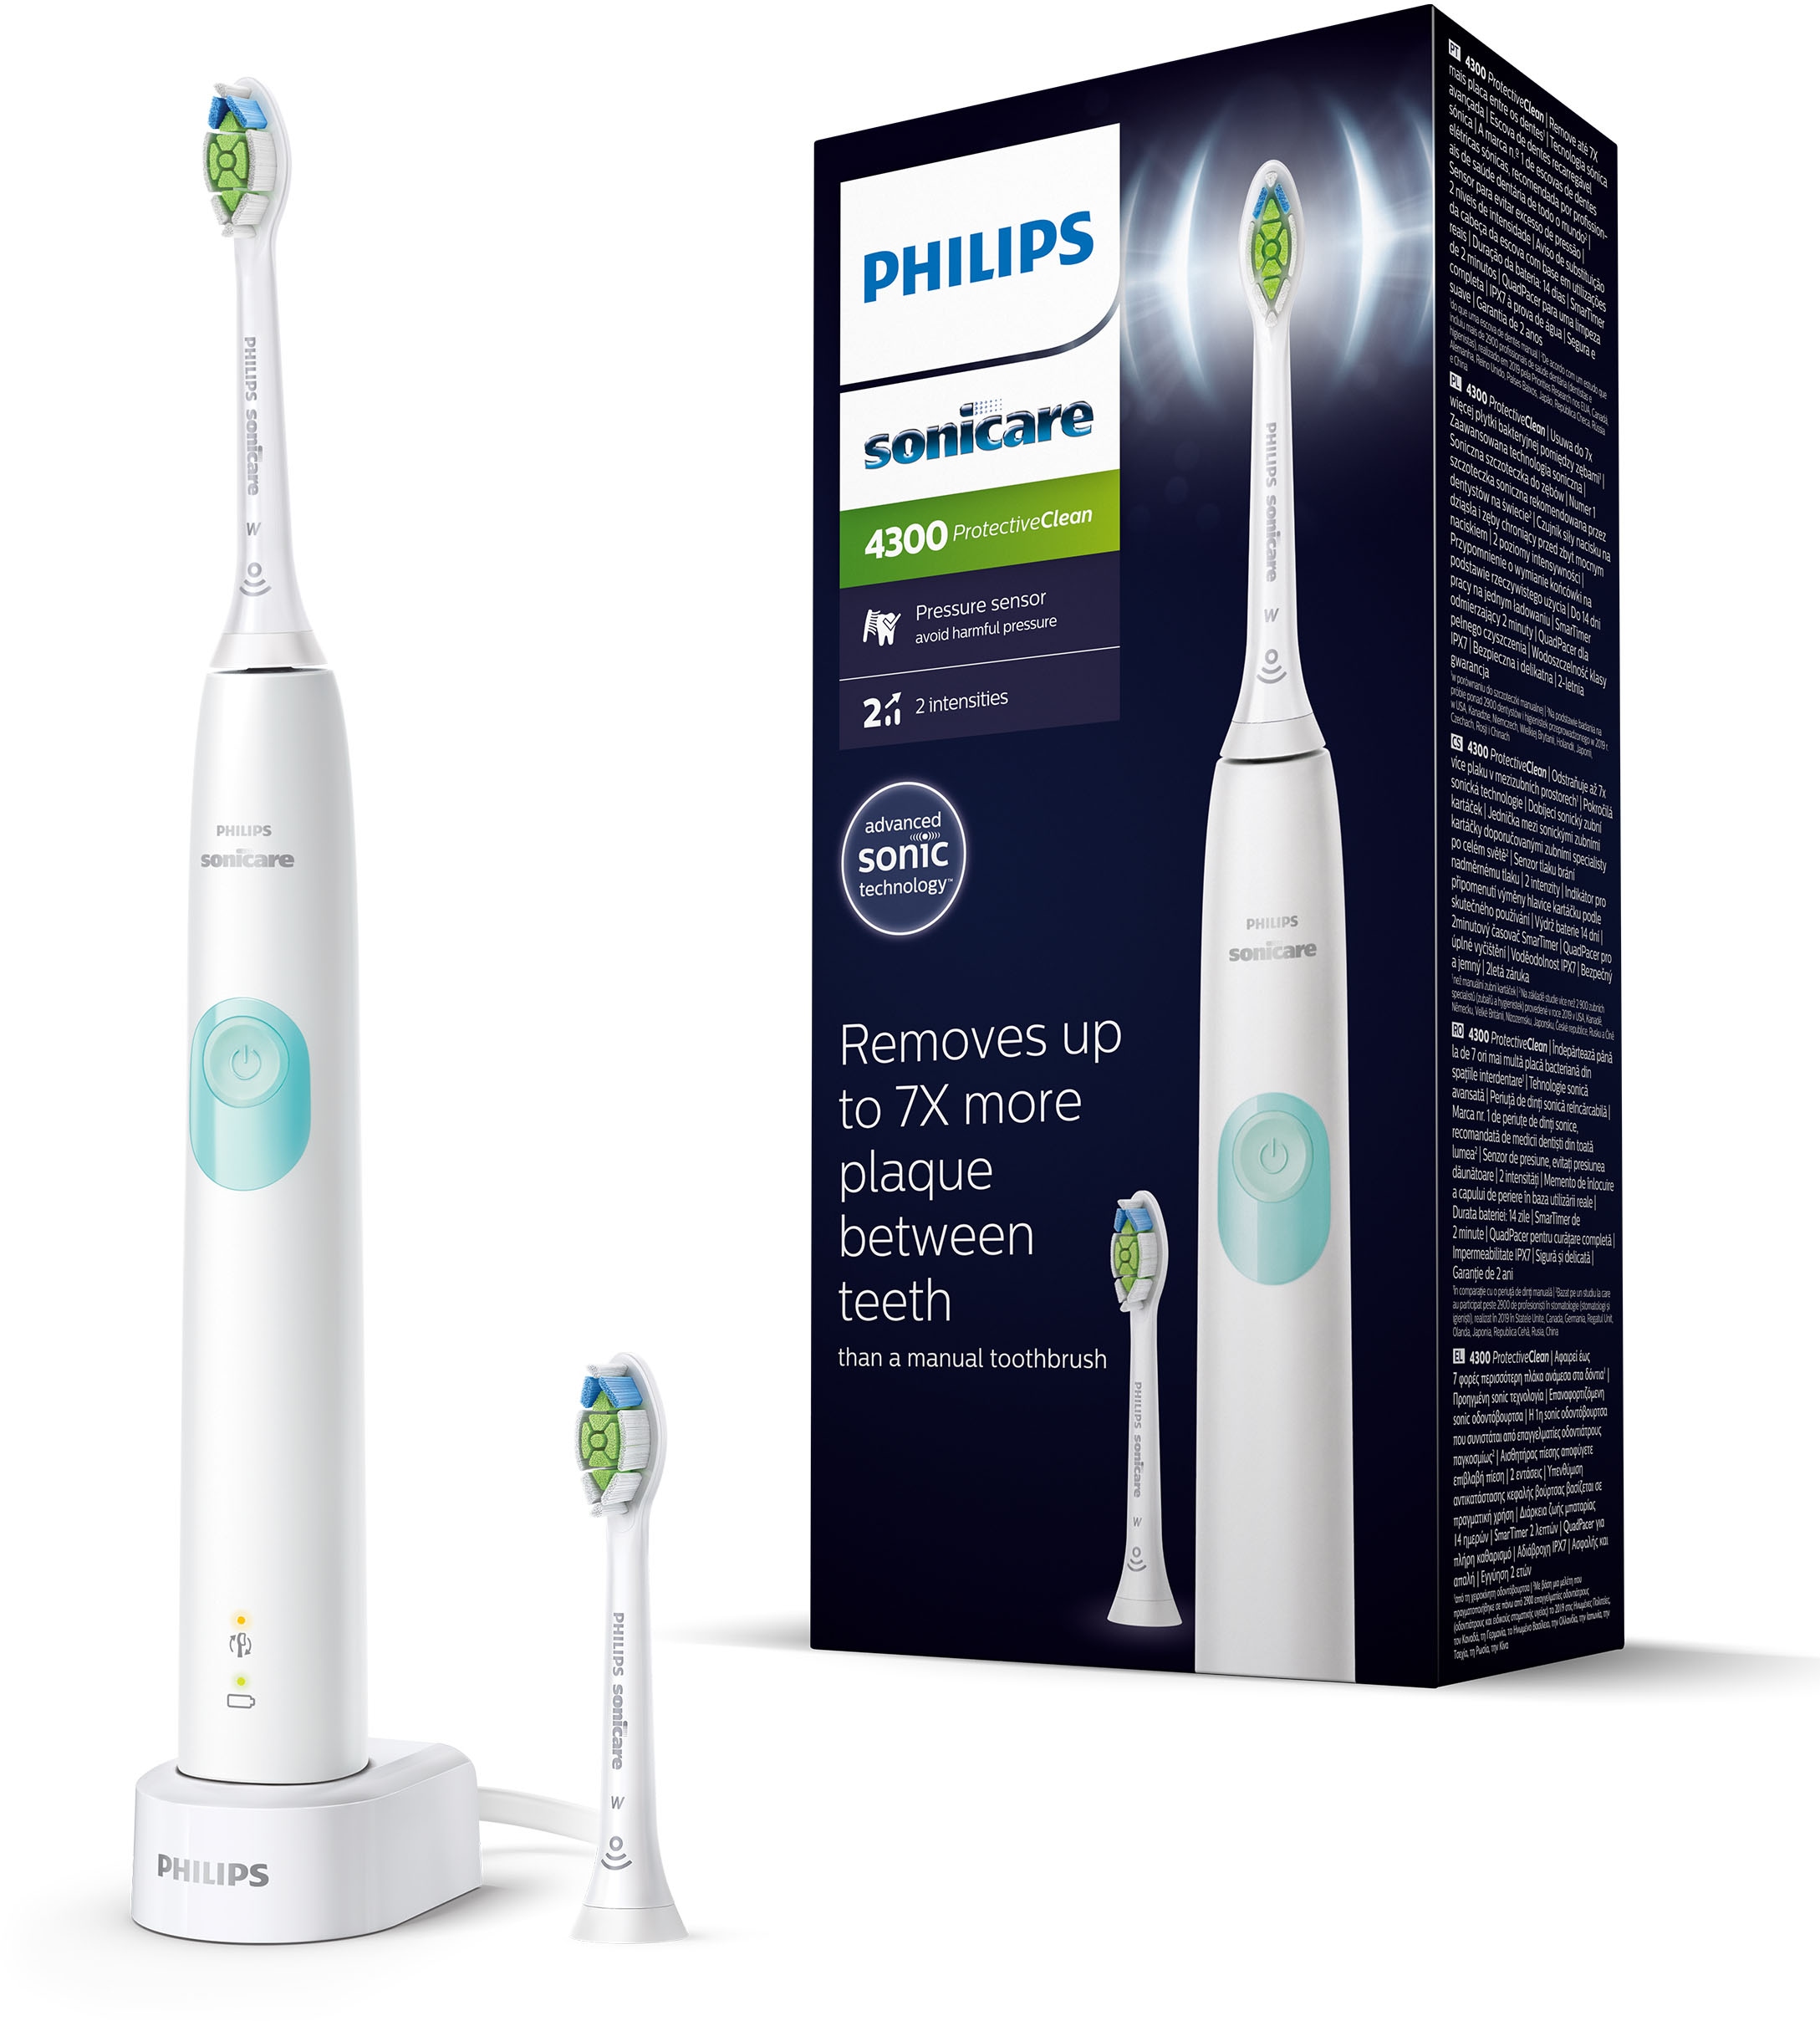 Philips Sonicare Elektrische Zahnbürste »HX6807/51«, 2 St. Aufsteckbürsten, ProtectiveClean 4300 mit Schalltechnologie, inkl. Clean Putzprogramm